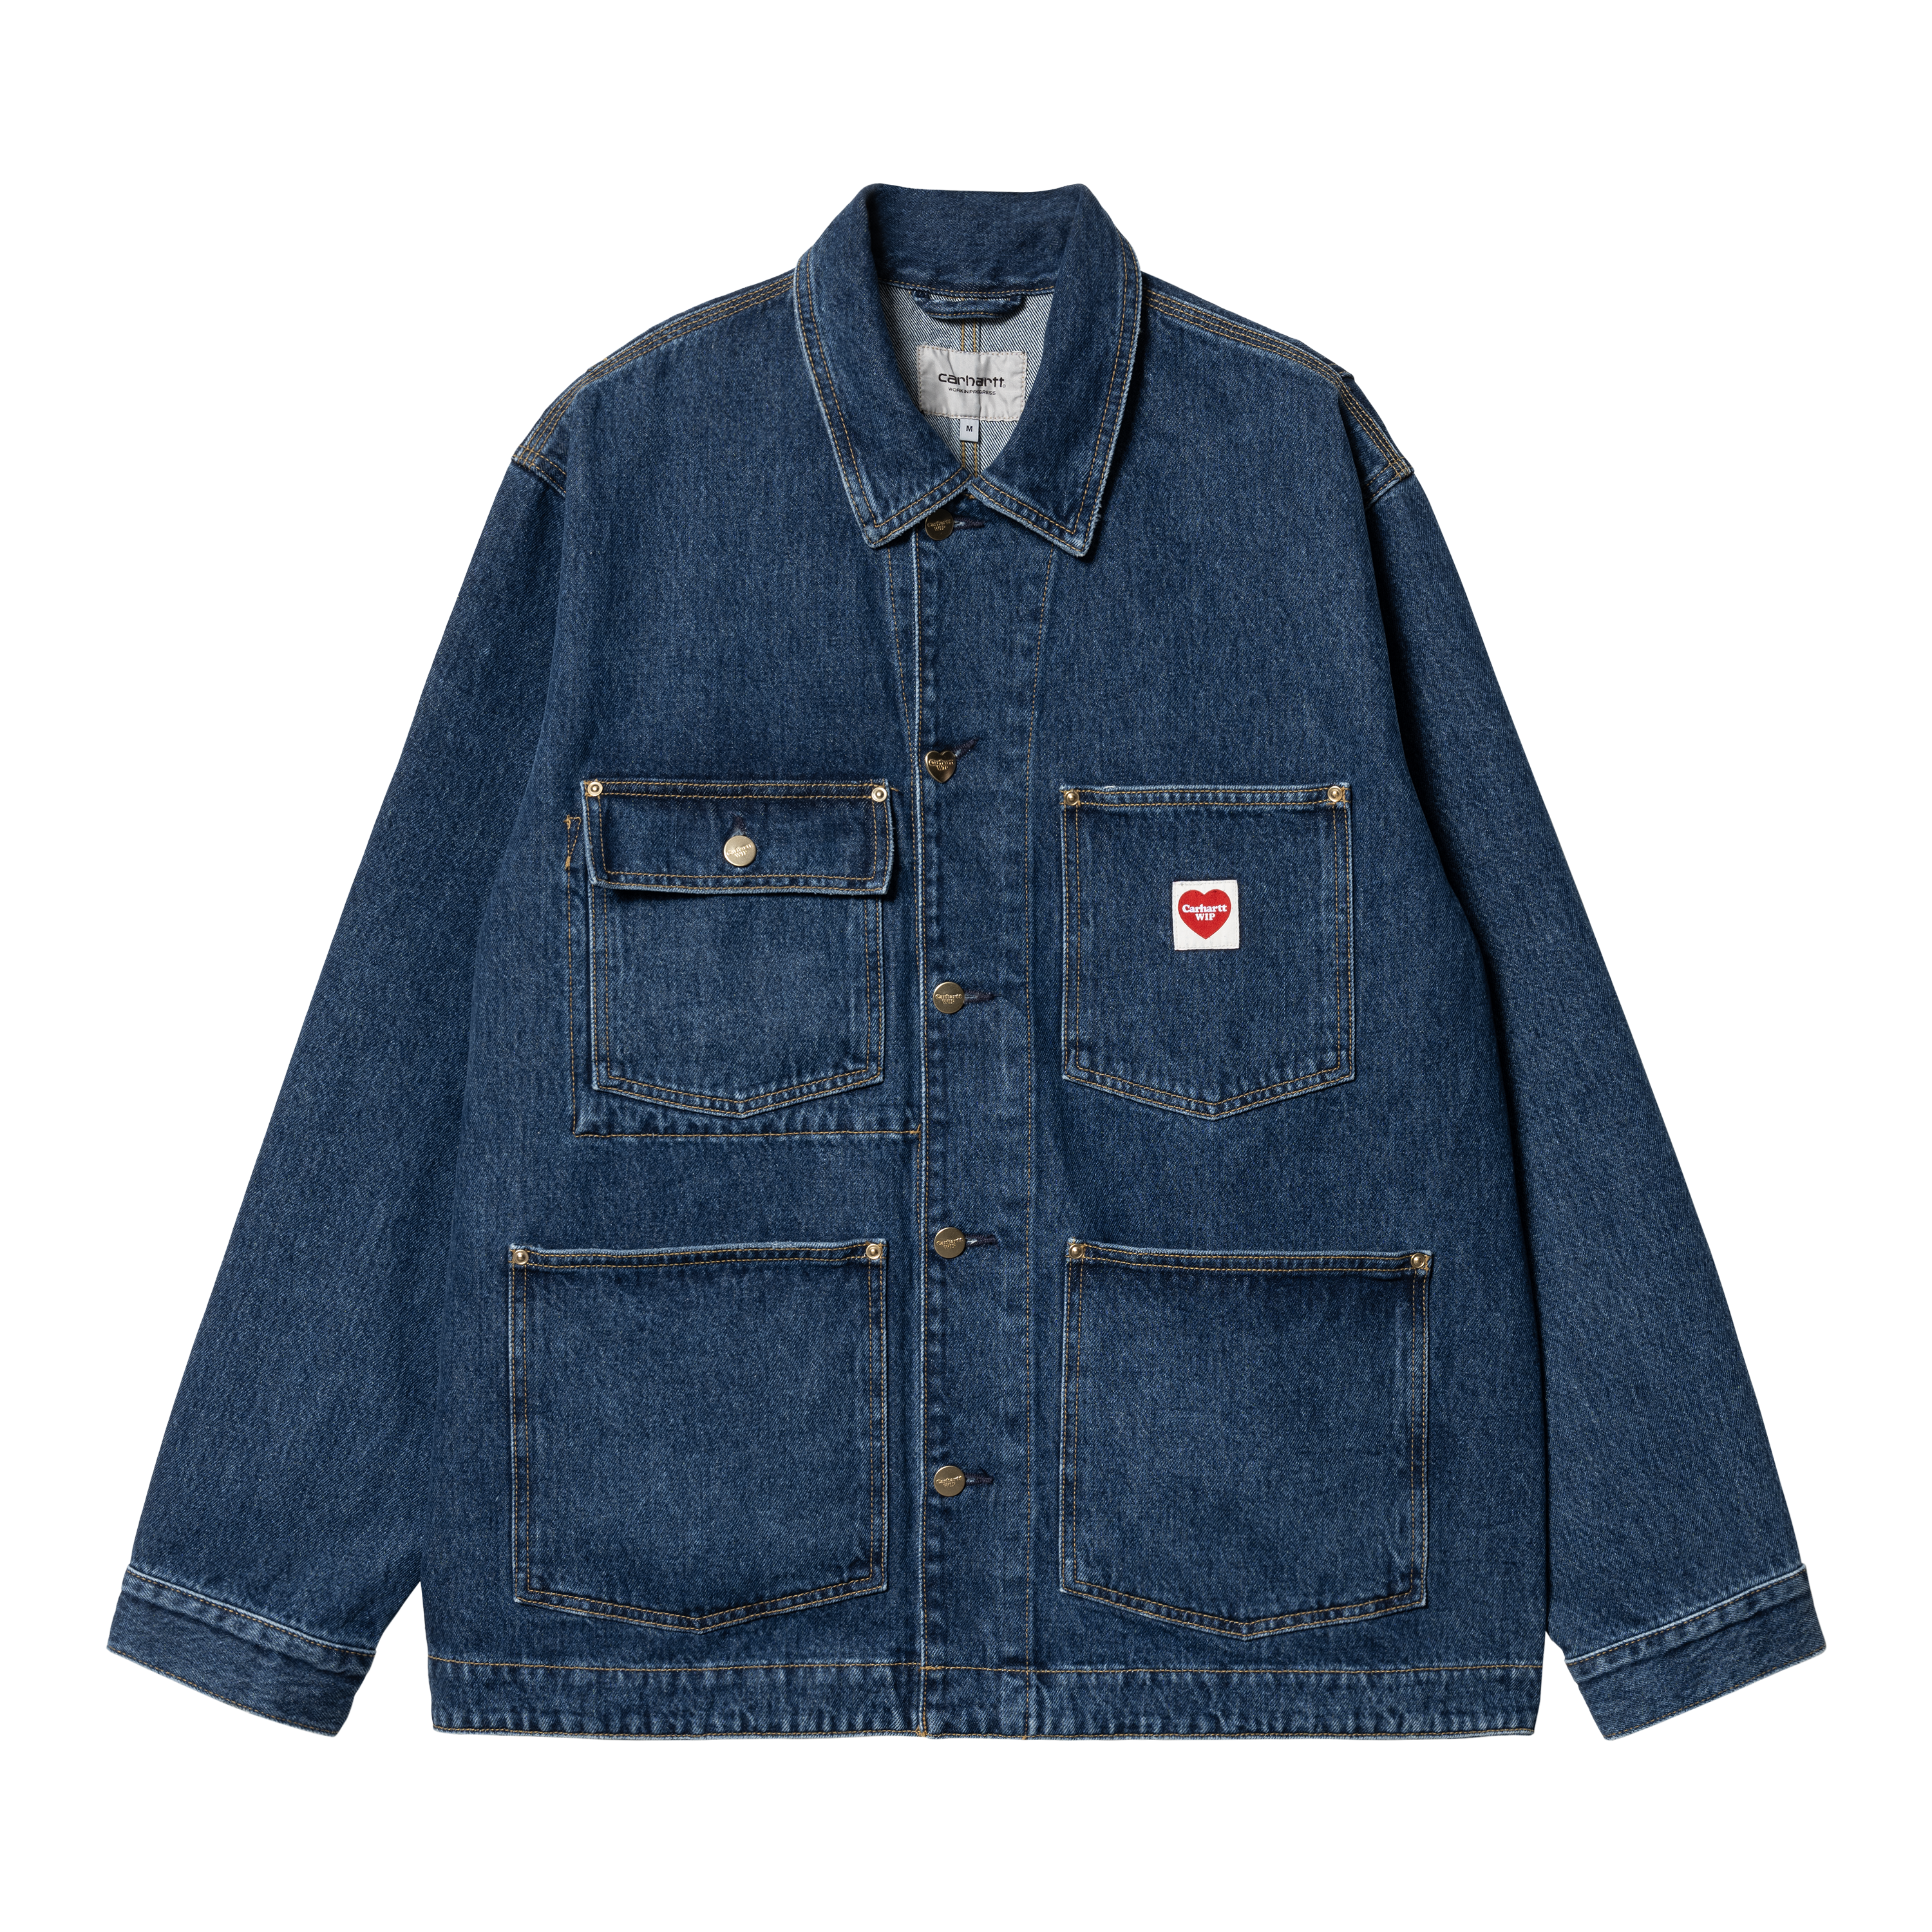 Carhartt WIP Nash Jacket in Blau